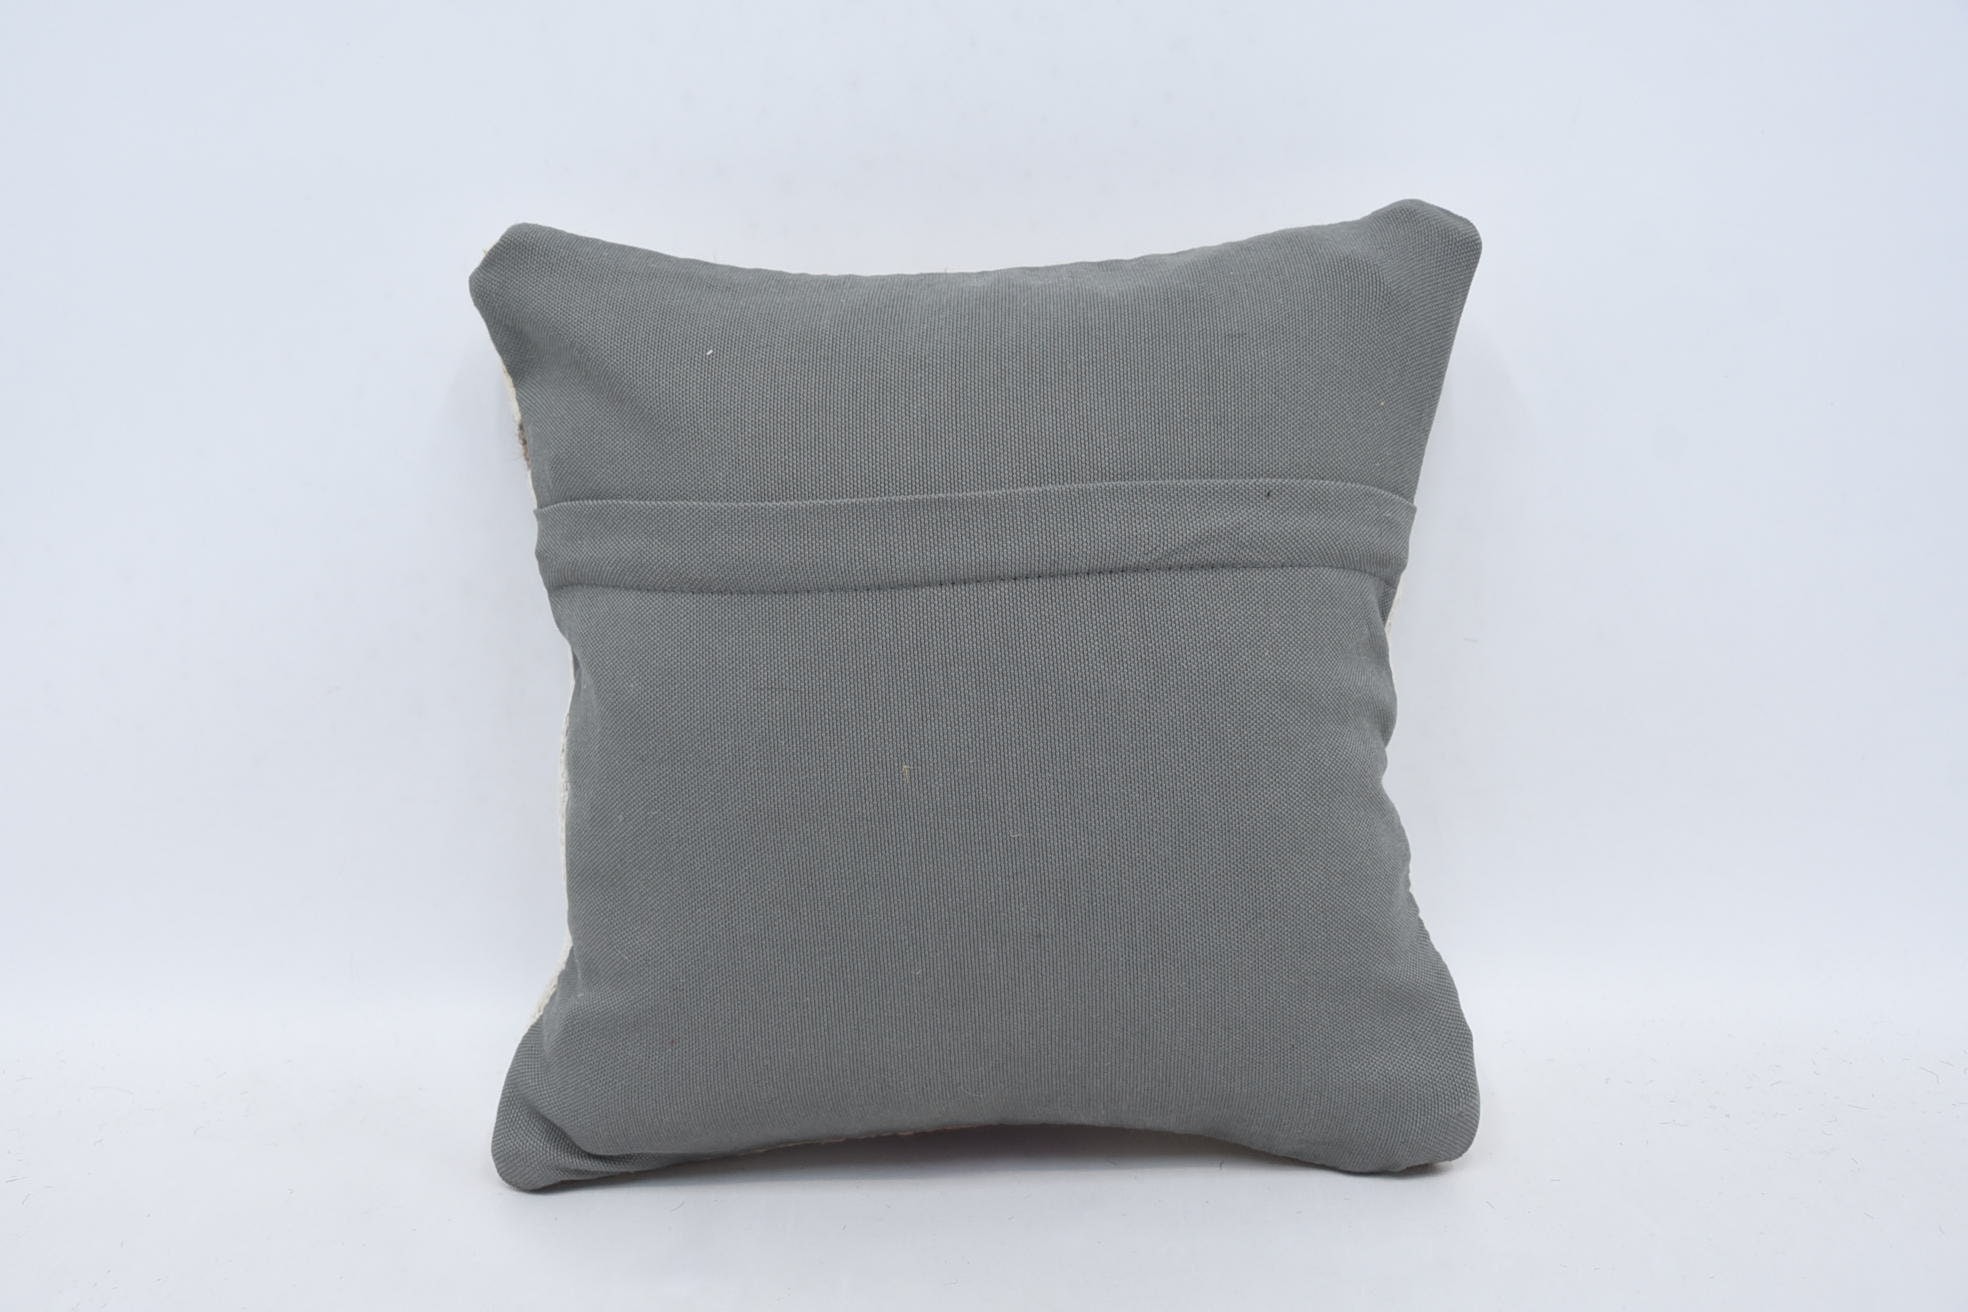 Crochet Pattern Pillow, Antique Pillows, Aztec Cushion, 14"x14" White Cushion Case, Kilim Cushion Sham, Pillow for Couch